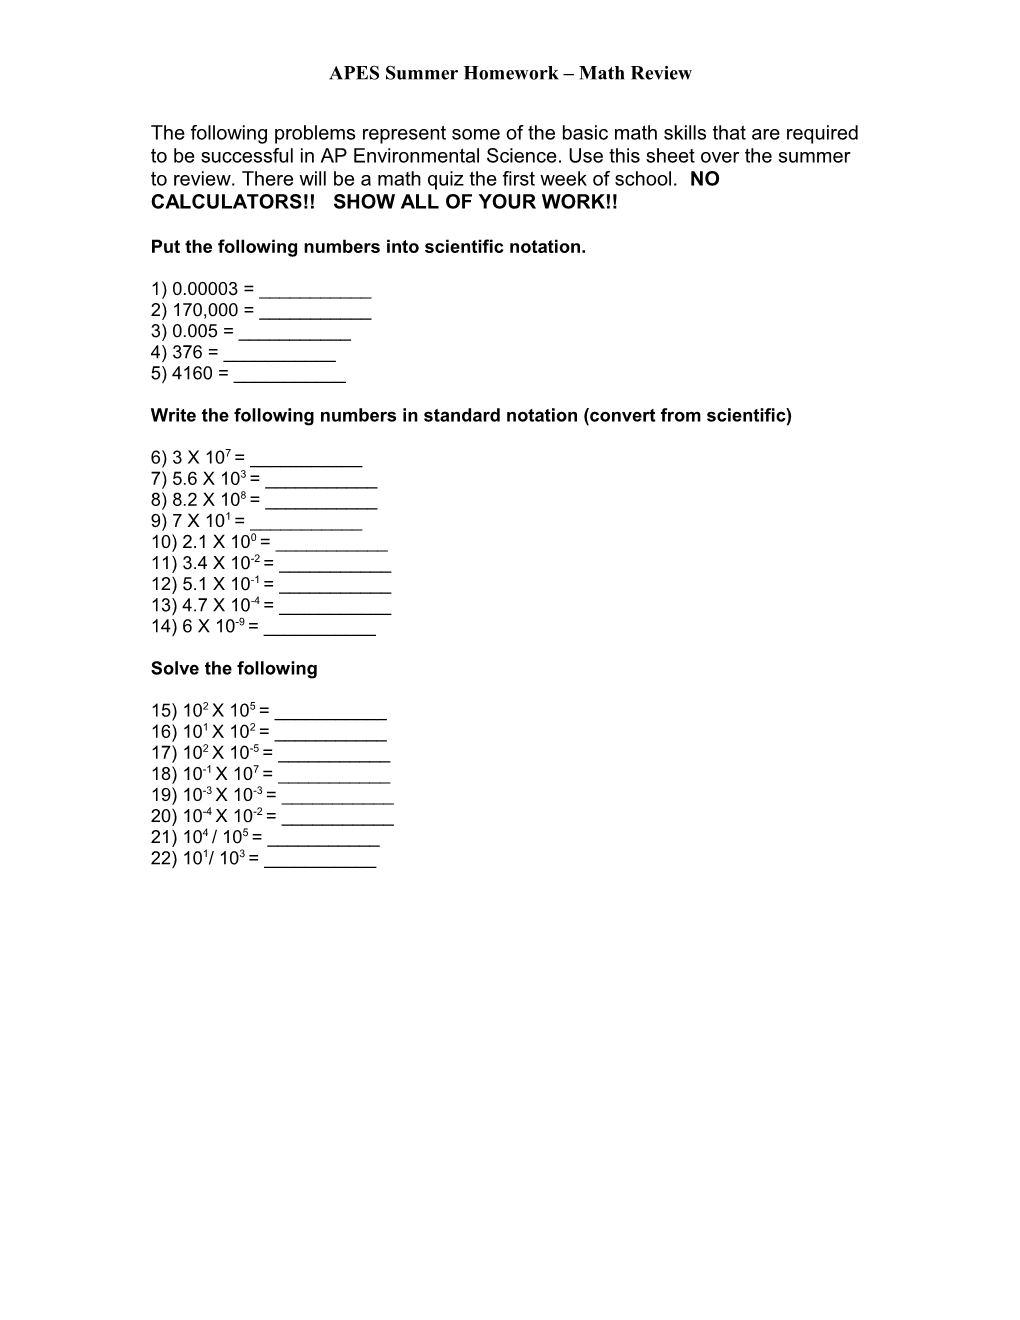 APES Summer Homework Math Review